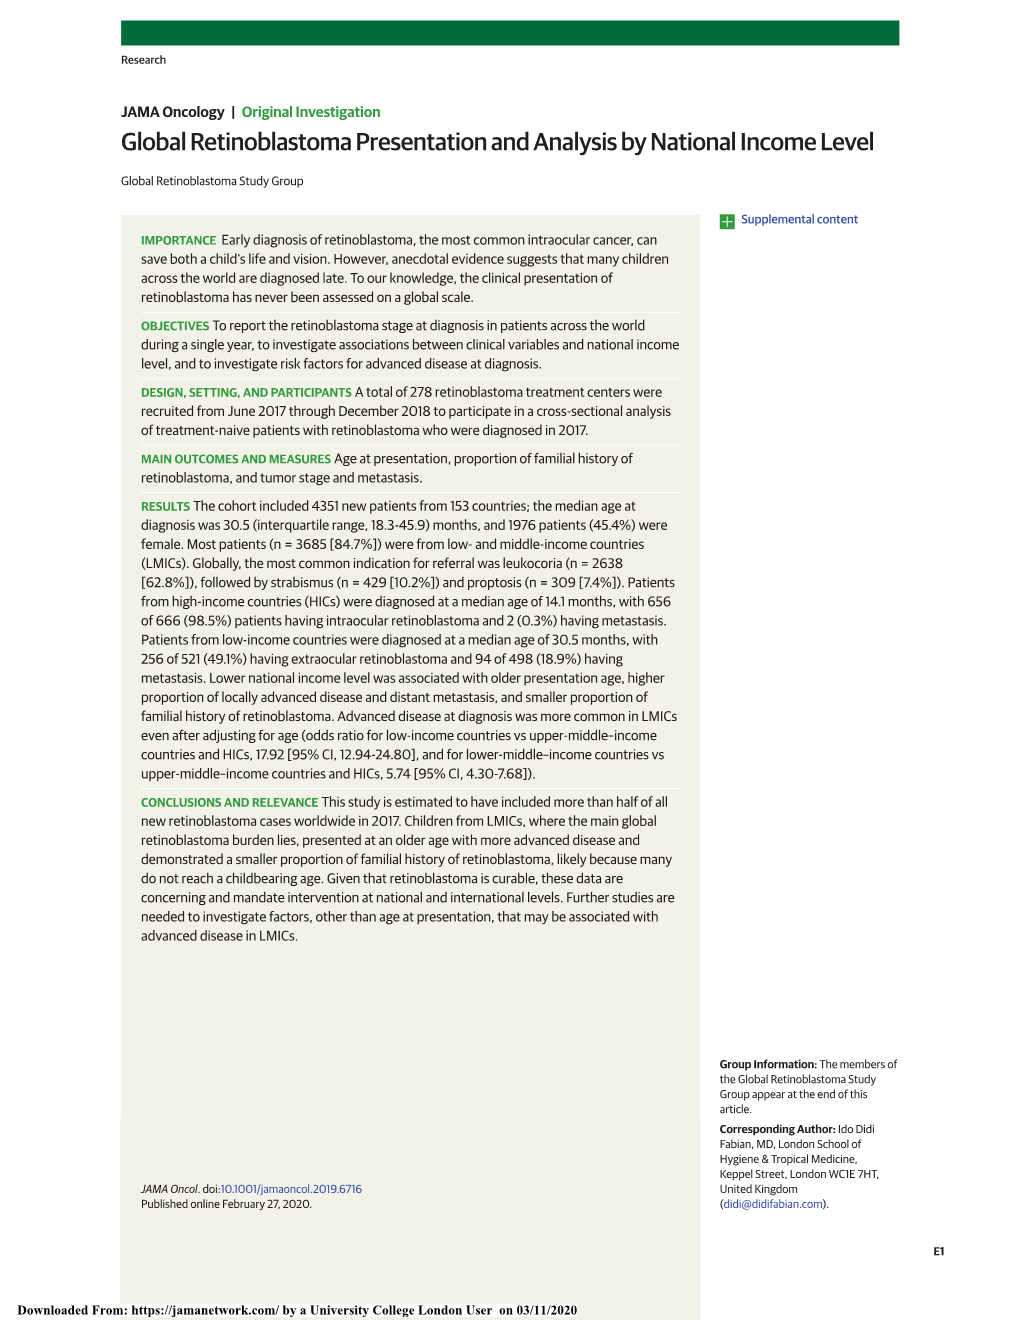 Global Retinoblastoma Presentation and Analysis by National Income Level